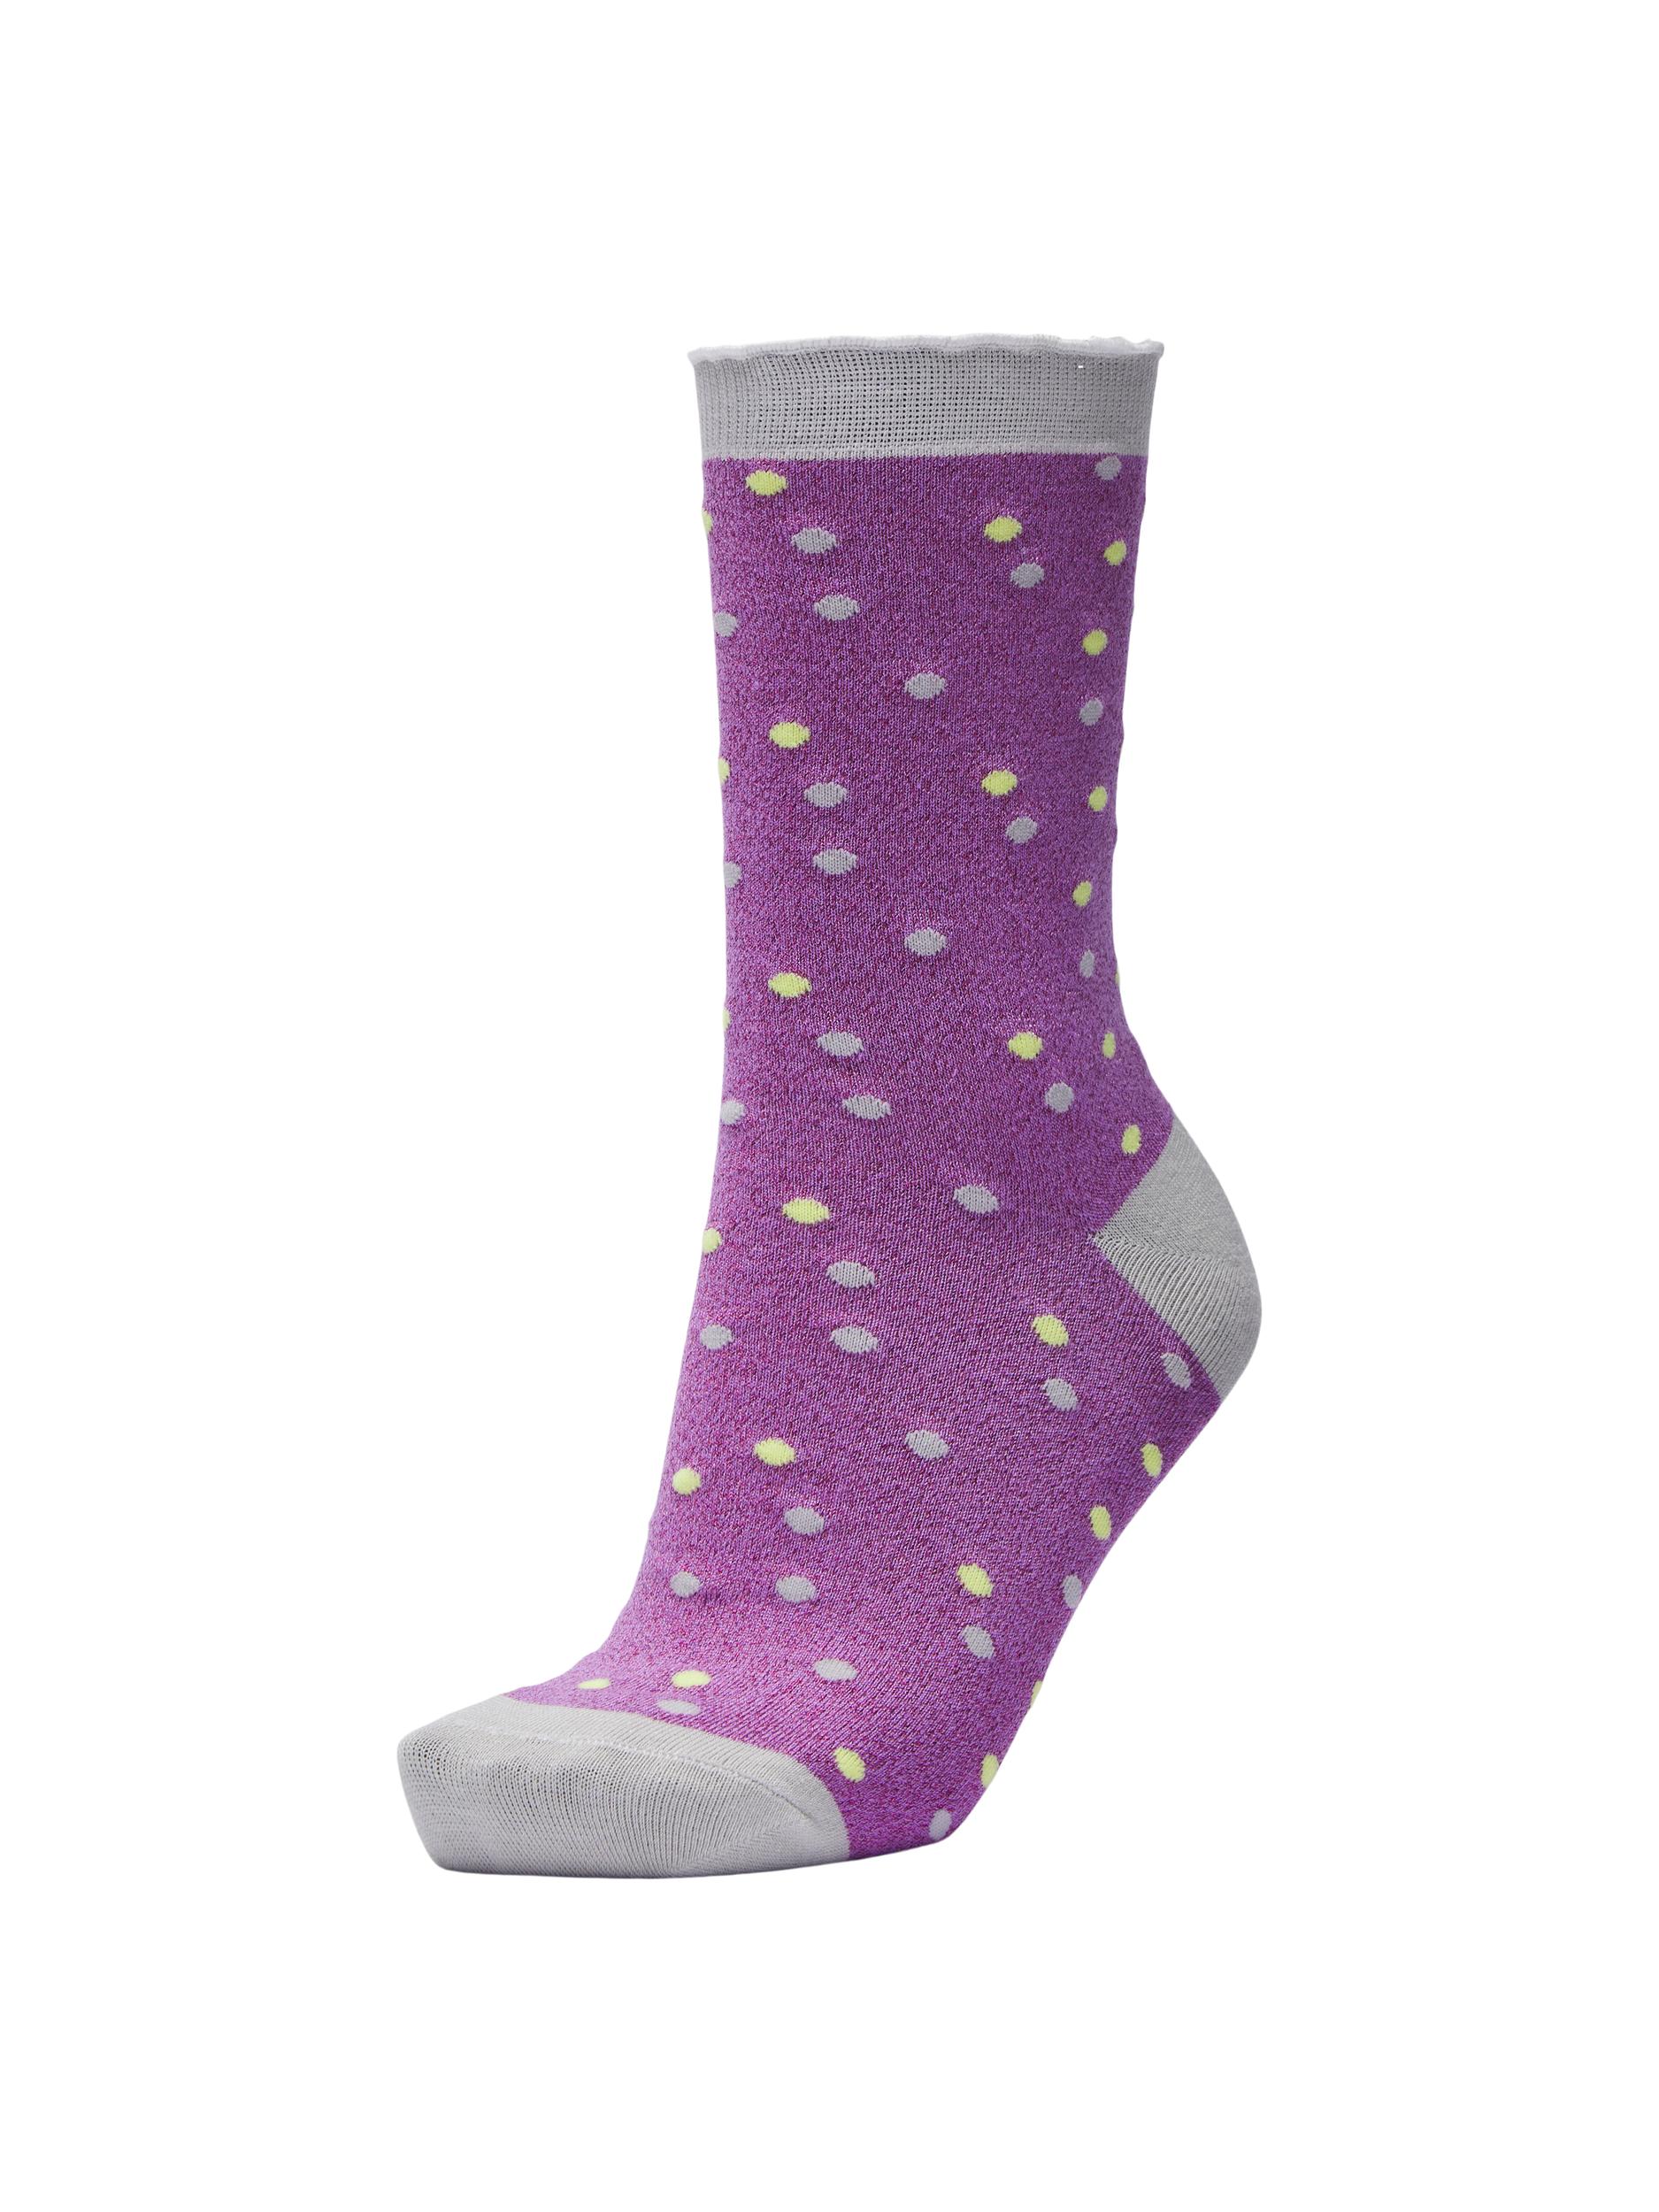 Selected Femme Vida Socks - African Violet Dots